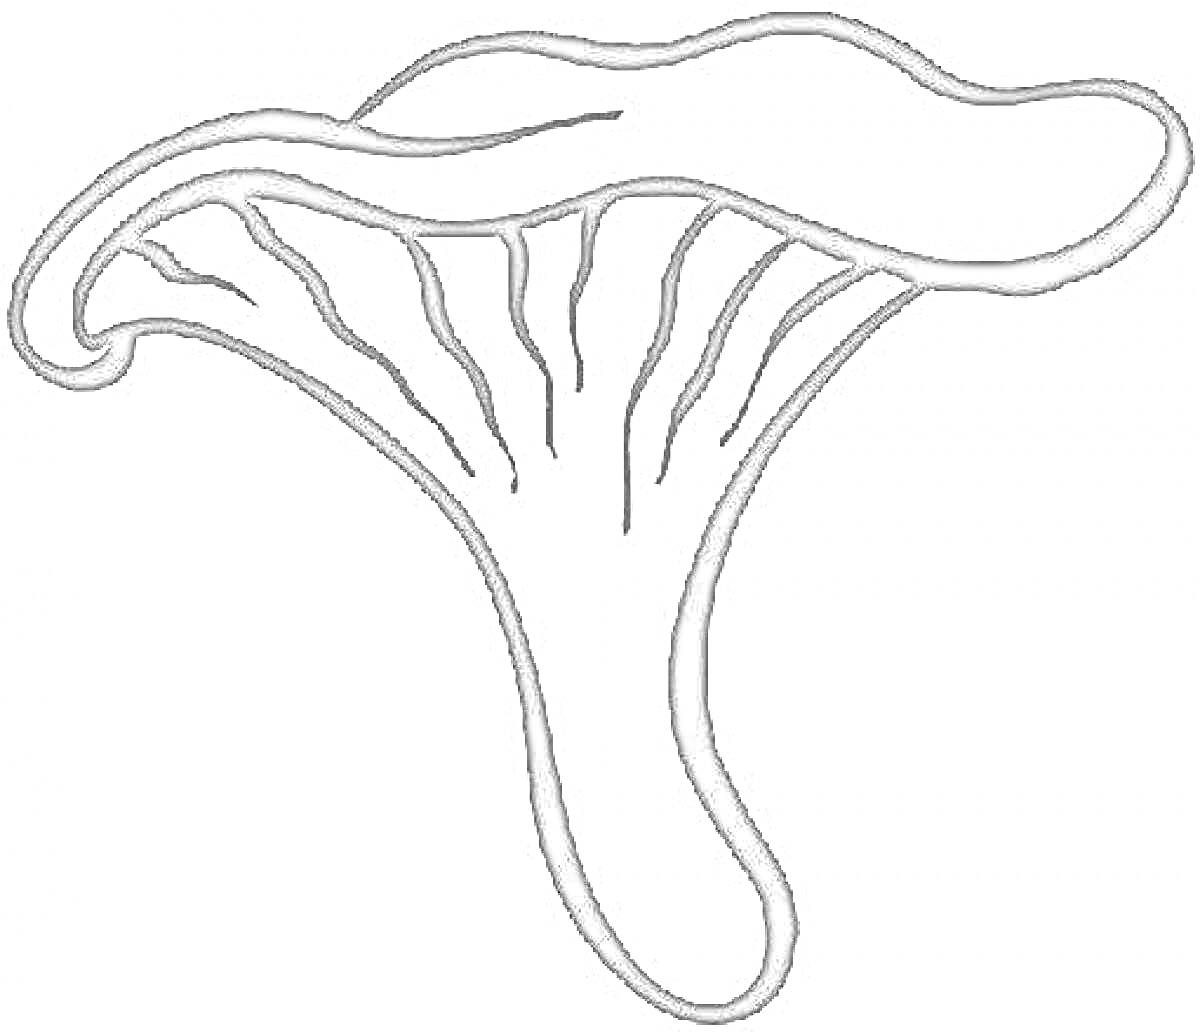 Раскраска Рисунок гриба с волнисто-распростертыми краями шляпки